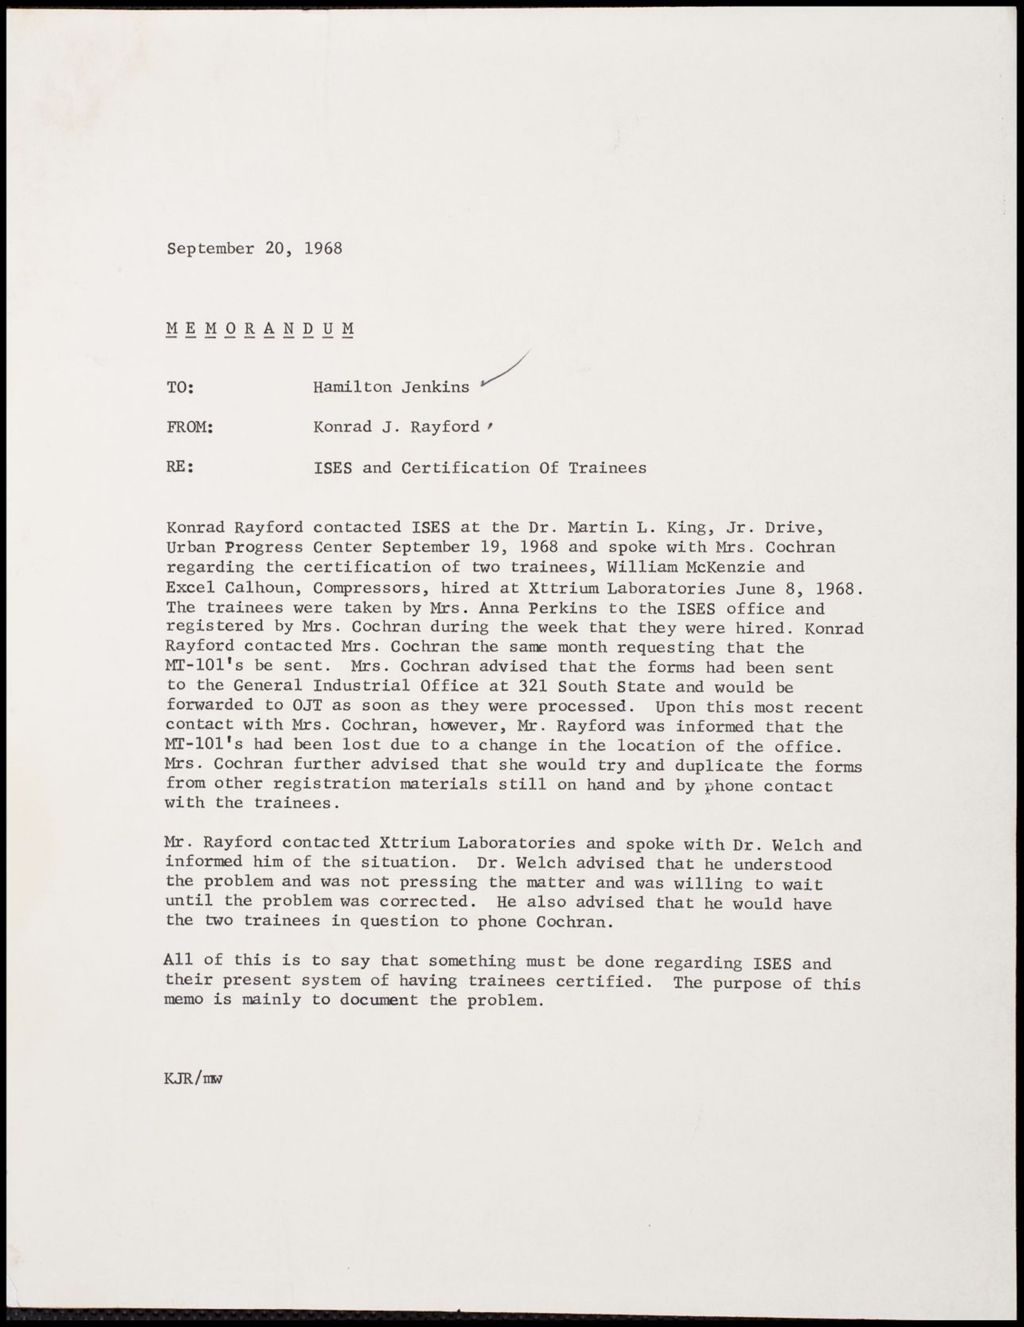 Memoranda, 1968 (Folder II-140)